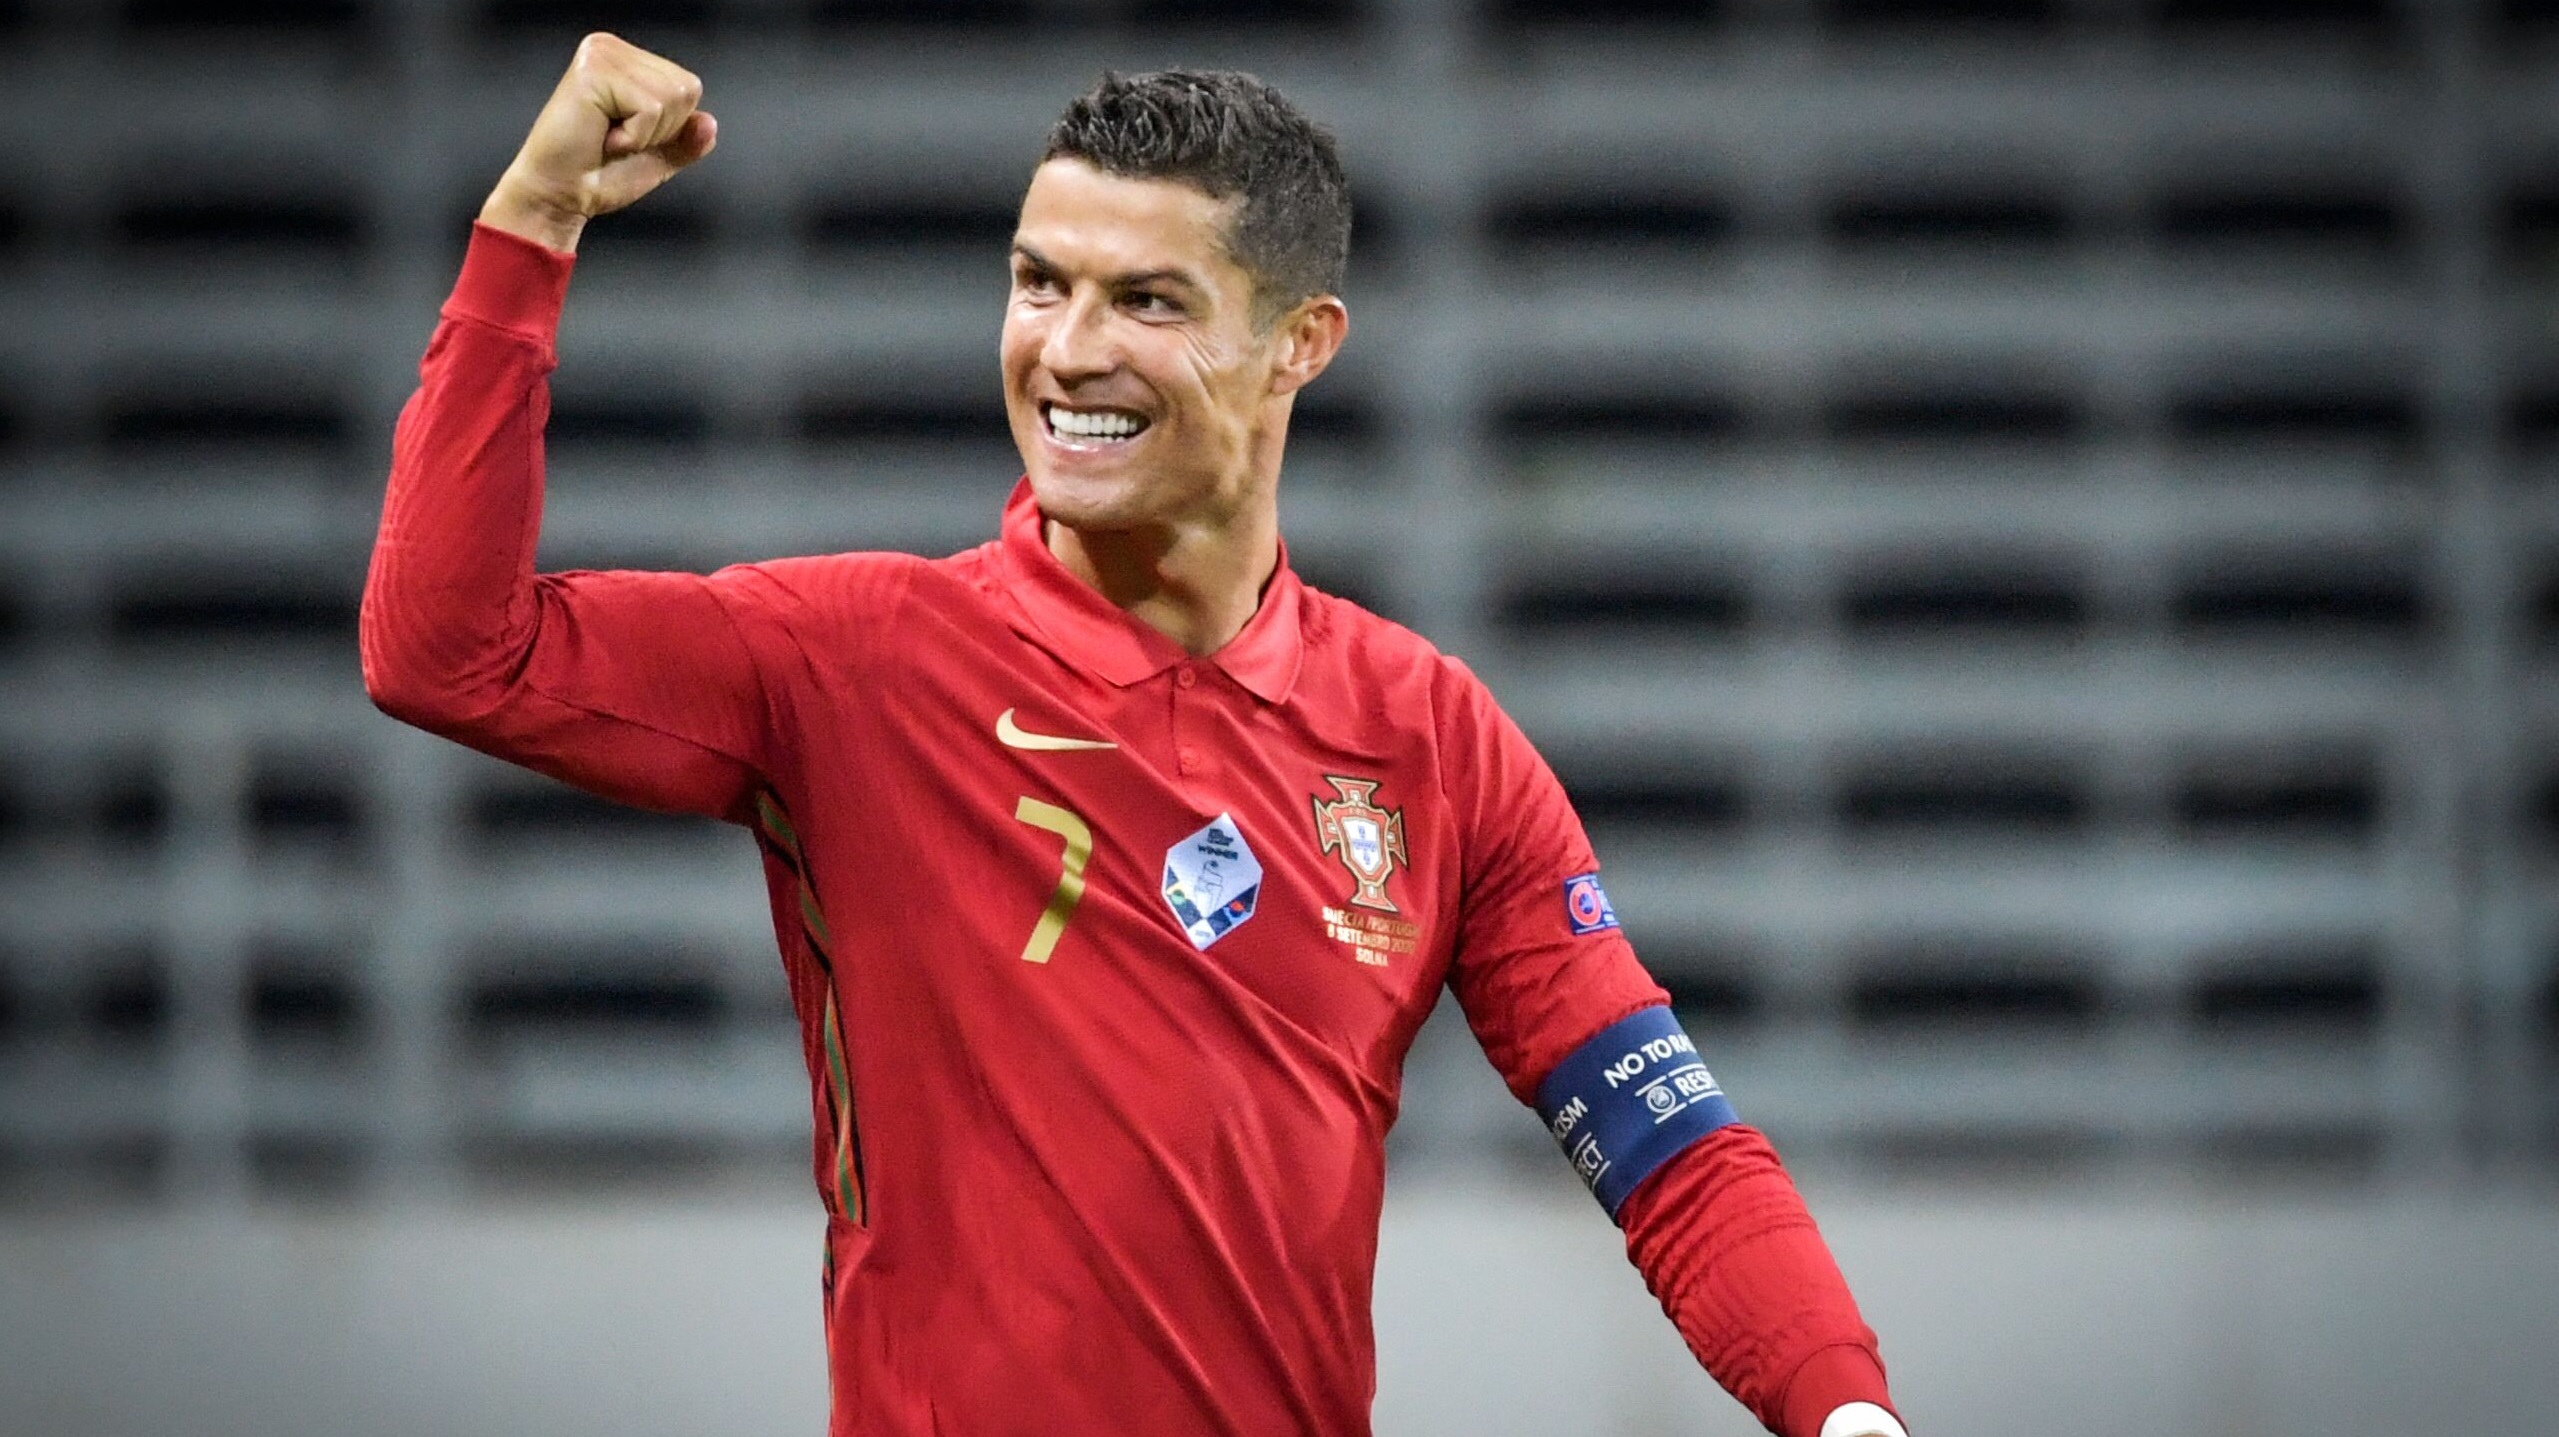 Tout ce que vous pouvez savoir de la saison Portugaise de Cristiano Ronaldo